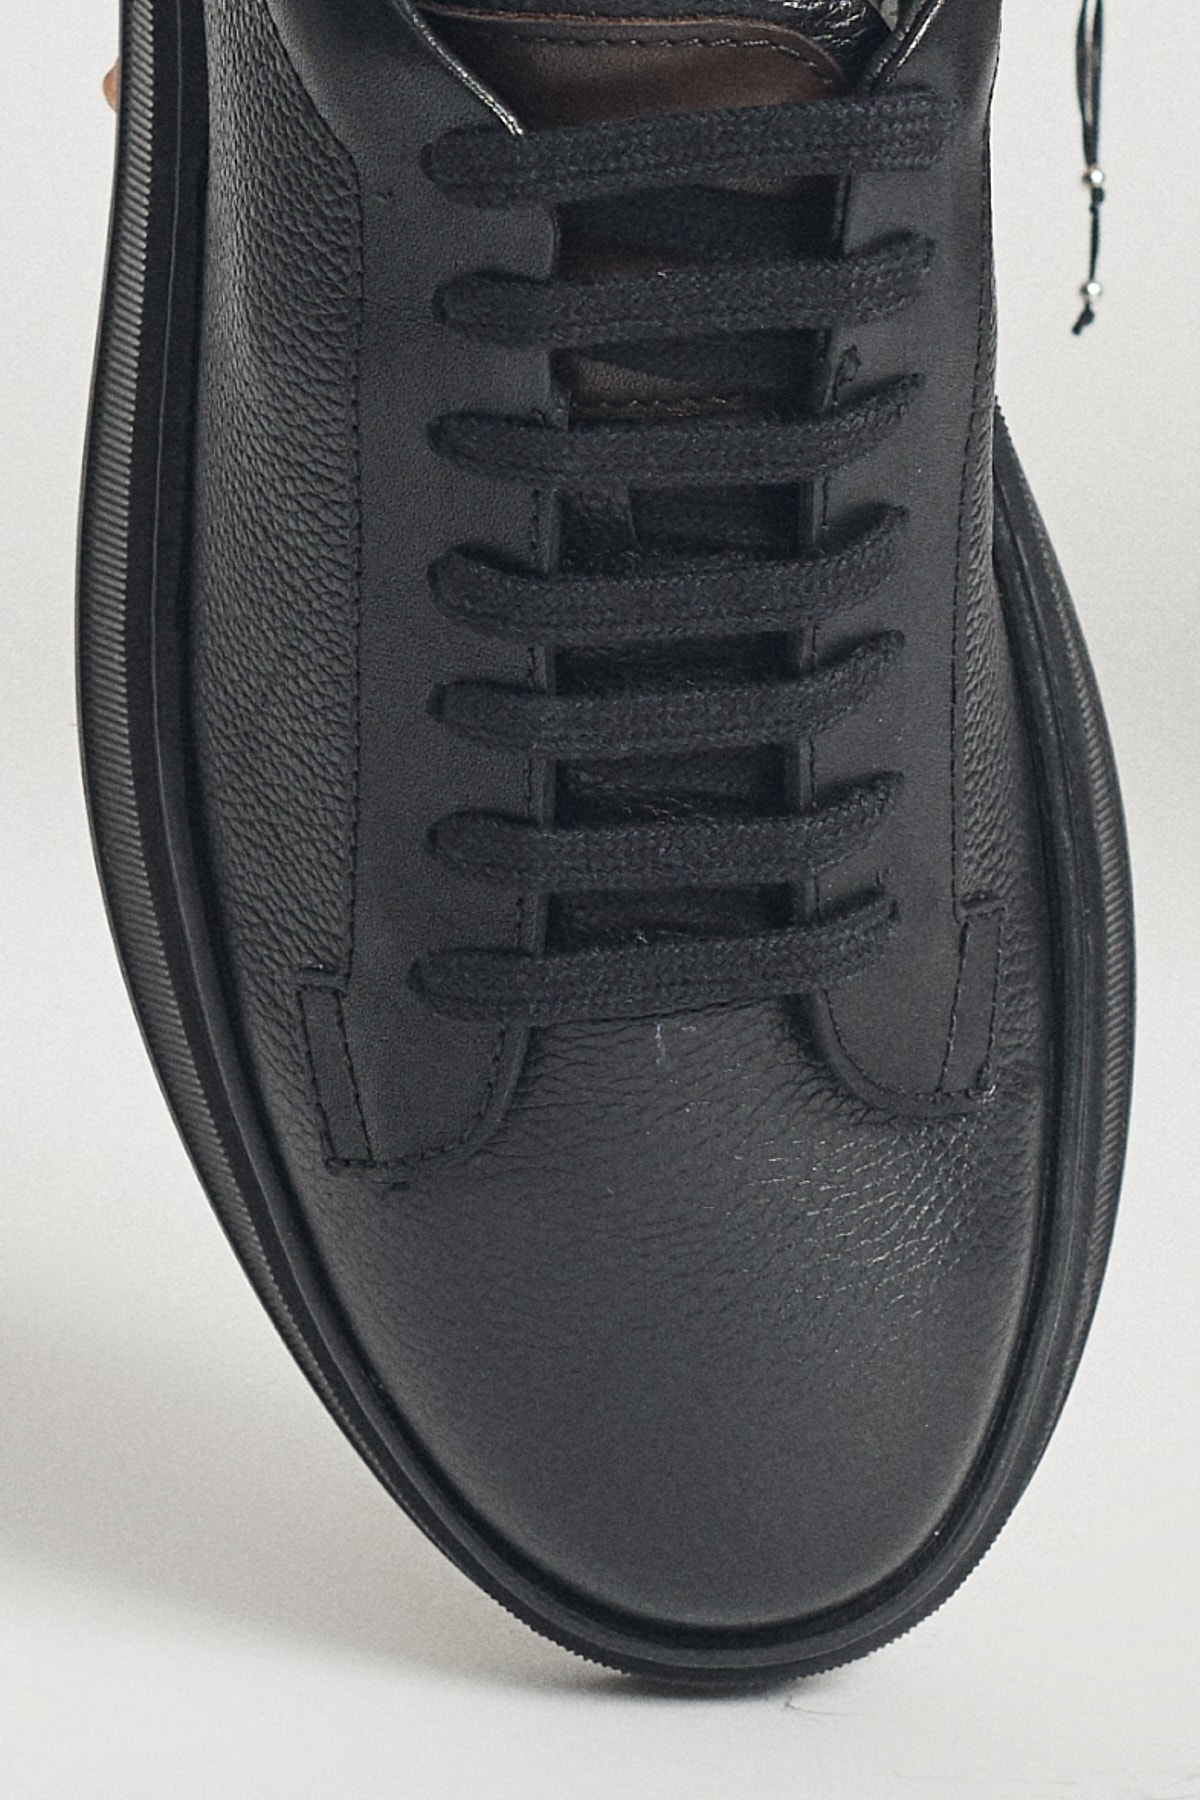 ALTINYILDIZ CLASSICS Erkek Siyah %100 Hakiki Deri Sneaker Ayakkabı ZN9131